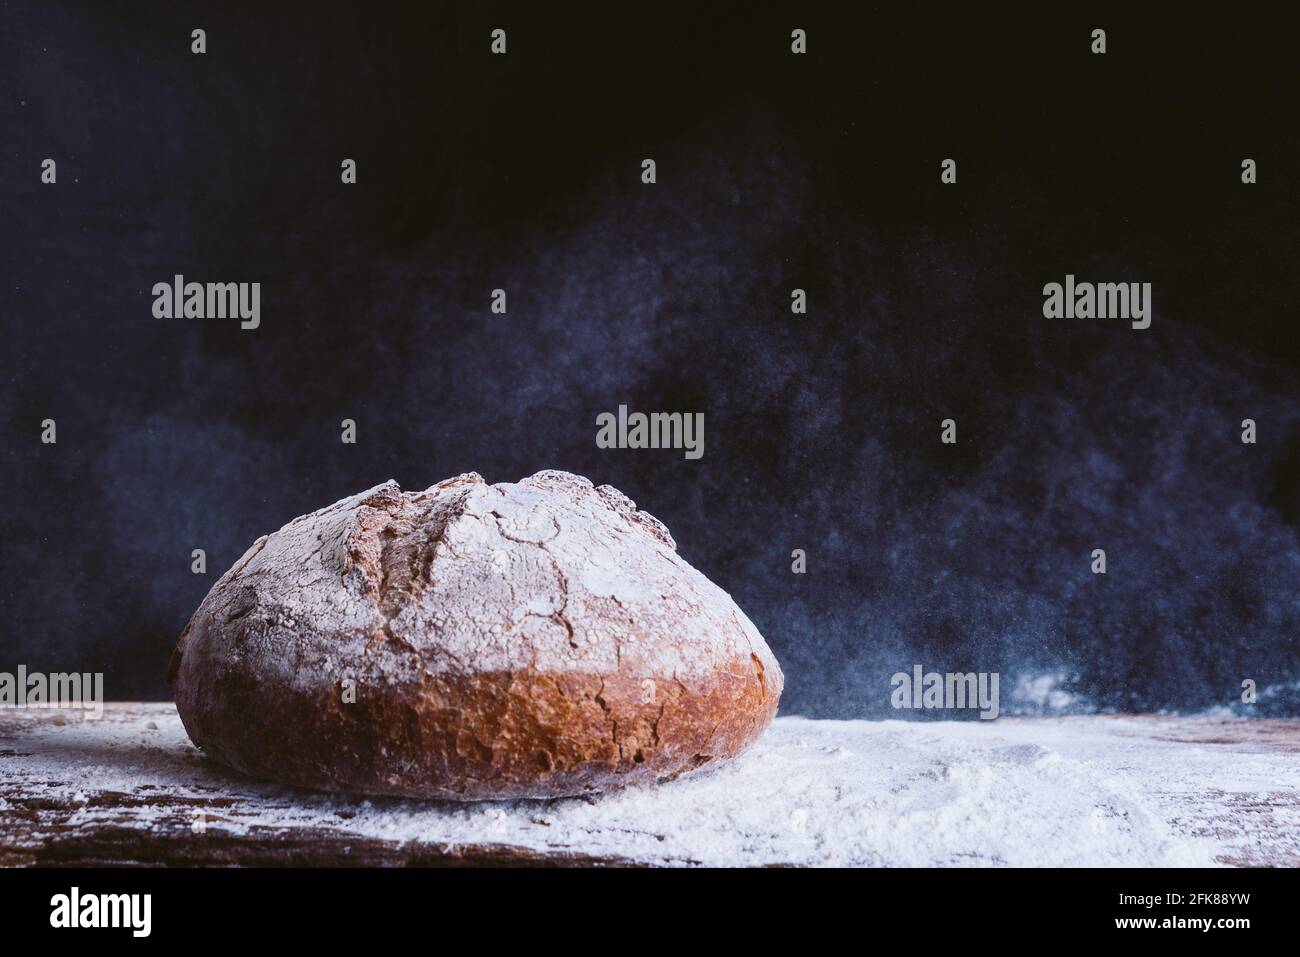 pan dorado fresco y rústico sobre mesa de cocina de madera con polvo de harina sobre fondo negro. concepto de panadería y alimentación saludable Foto de stock